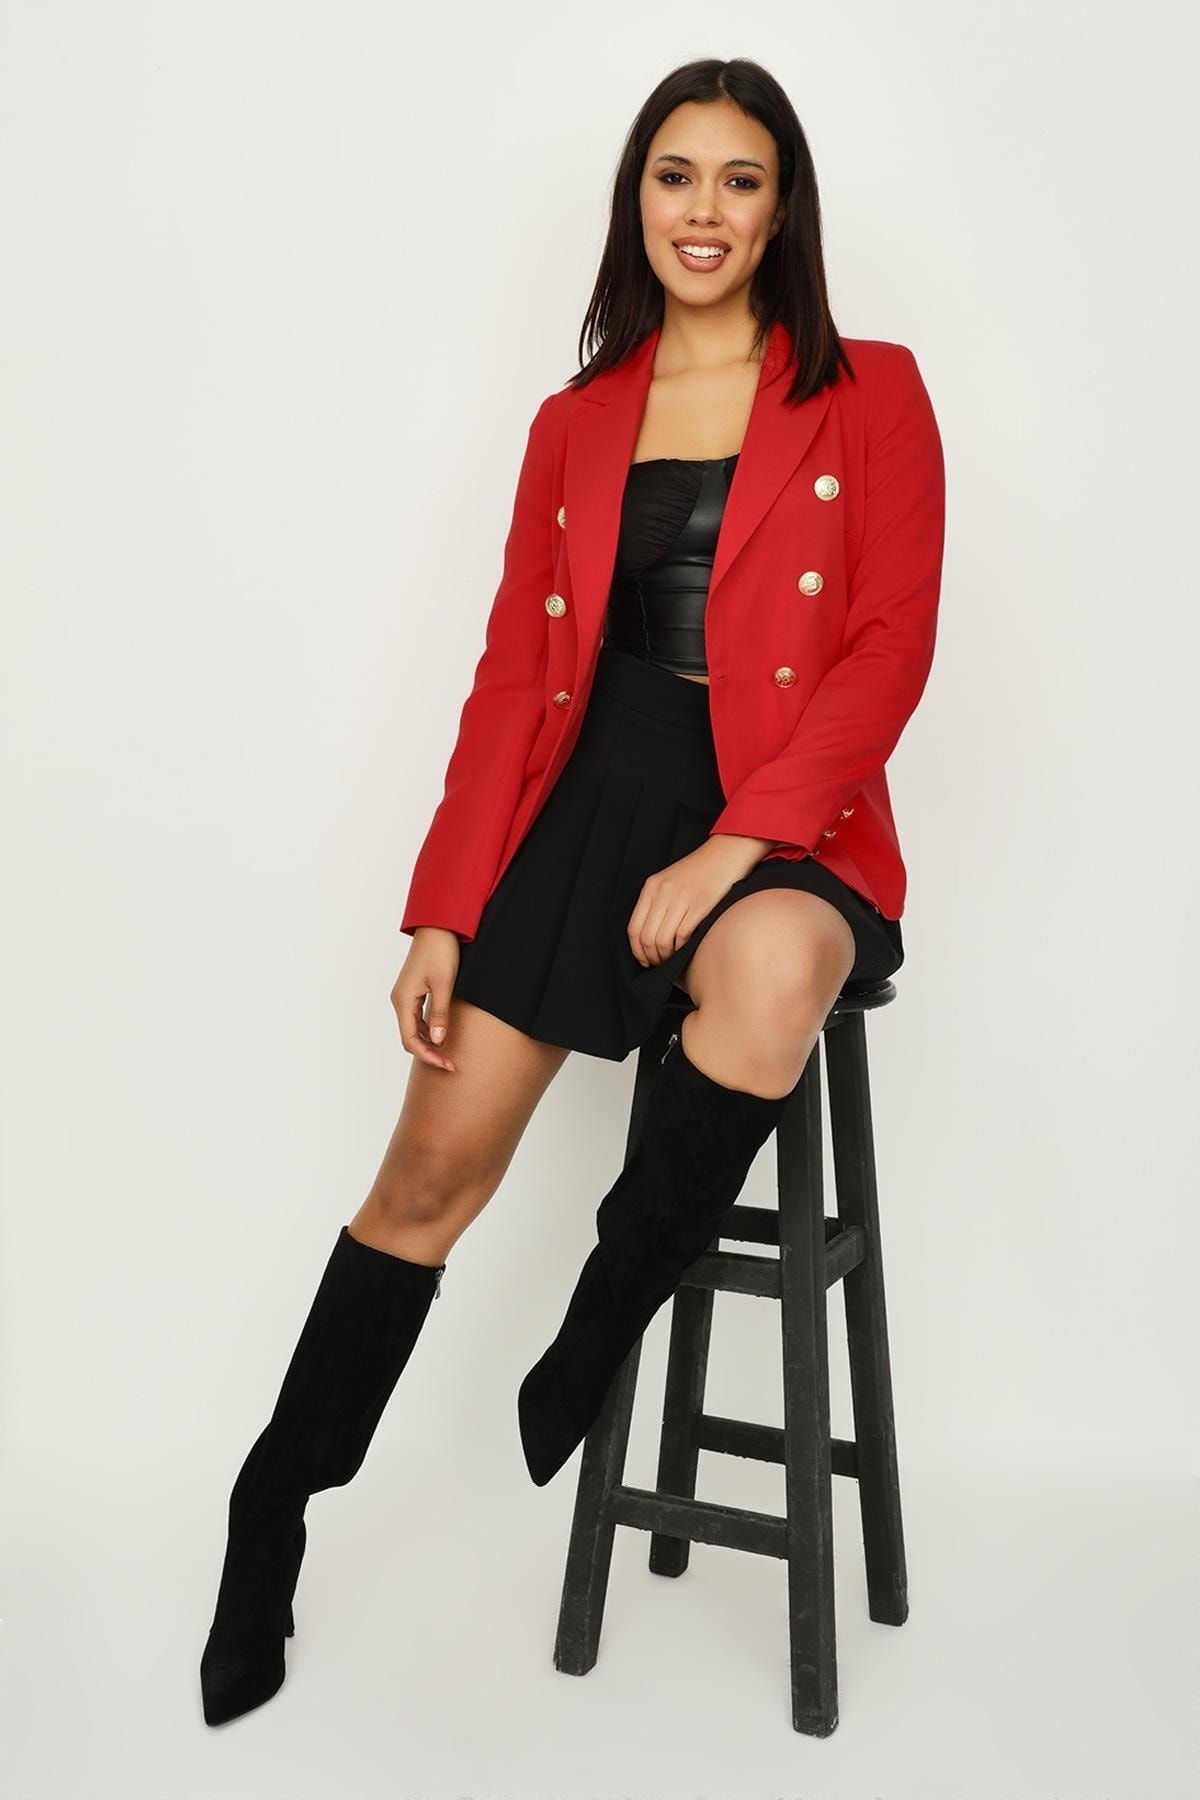 Select Moda Kadın Kırmızı Gold Düğme Kapamalı Astarlı Blazer Ceket